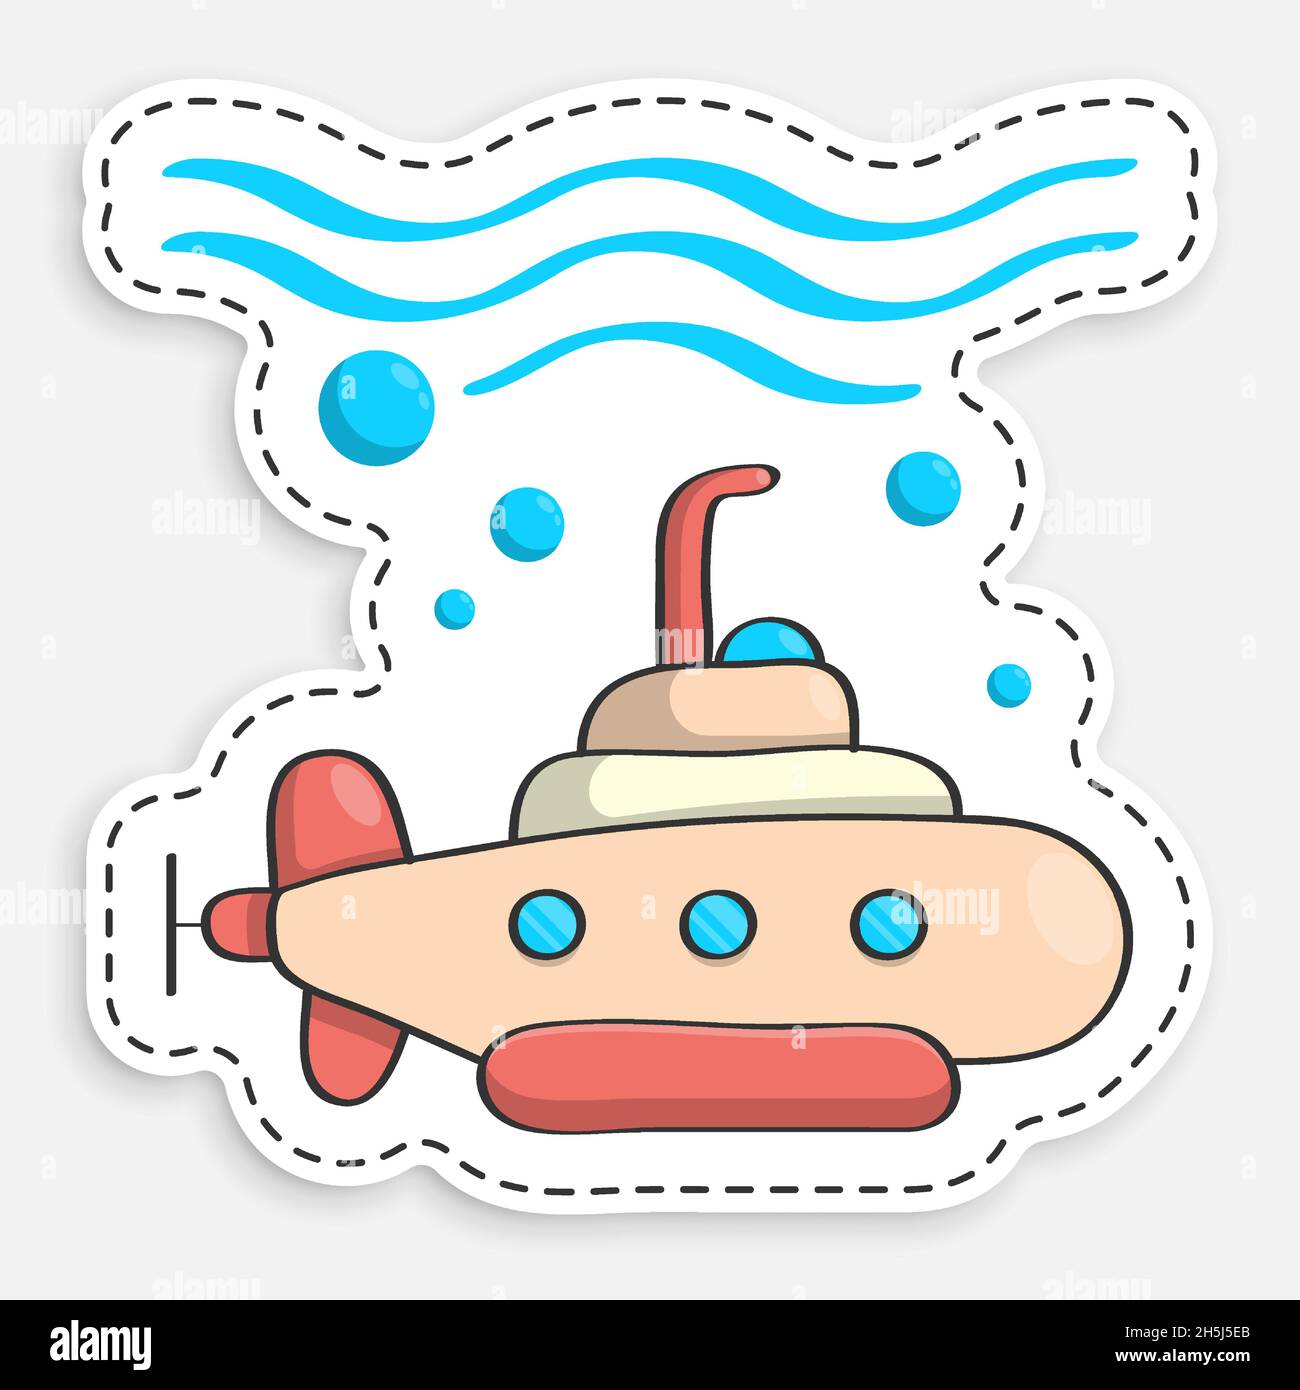 Cartoon-Ikone des Doodle wissenschaftlichen bathyscaphe, U-Boot. Unterwasserforschung. Vektor auf weißem Hintergrund isoliert Stock Vektor